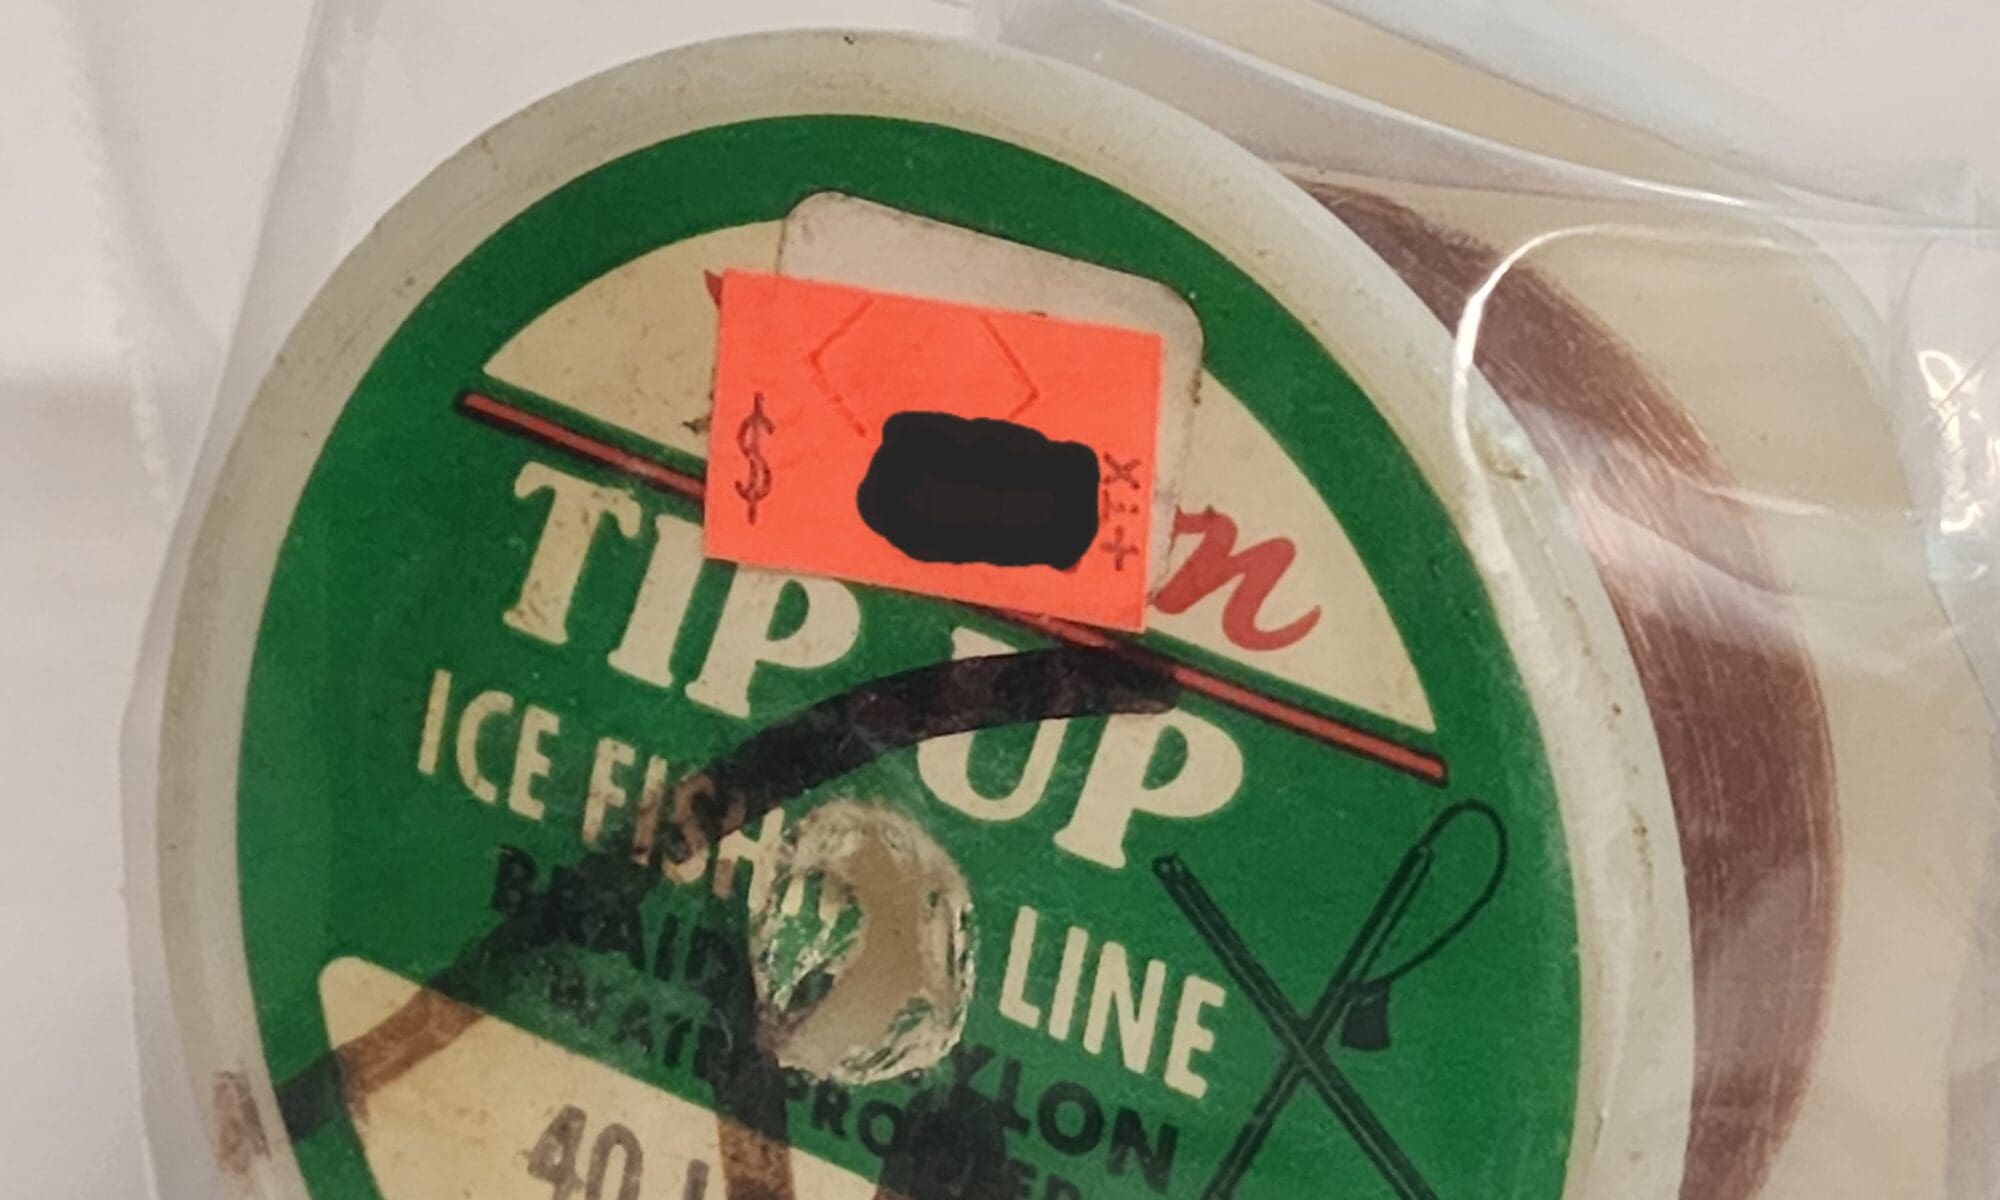 Mason Tip-Up Ice Fishing Line, Braided Nylon 40 lb. 50 Yards